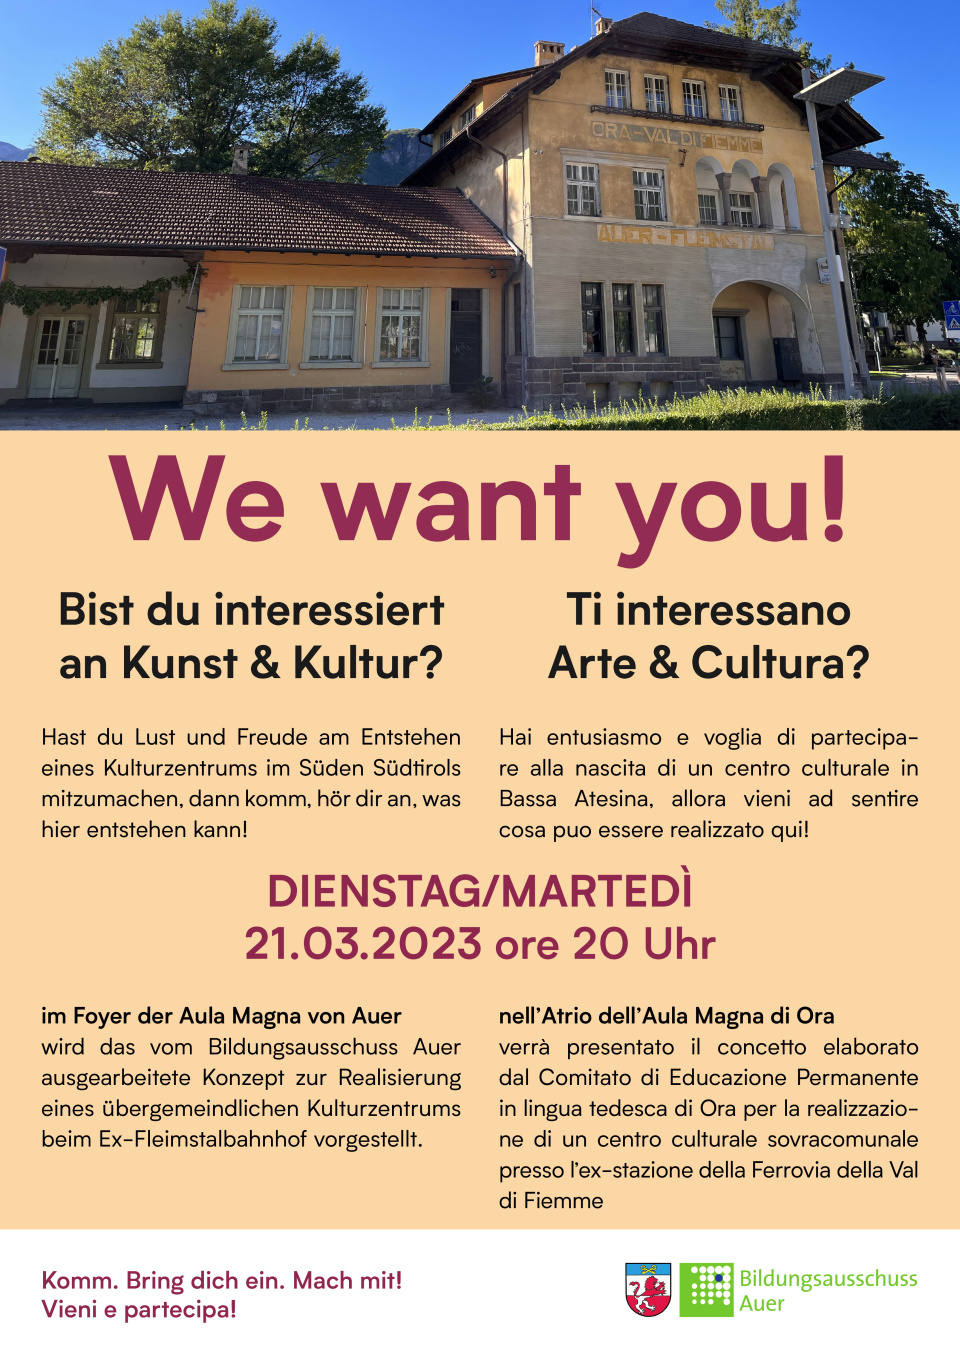 Das erste Treffen, um sich über das angedachte Kulturzentrum in Auer zu informieren: Dienstag, 21. März 2023, 20 Uhr, im Foyer der Aula Magna von Auer.